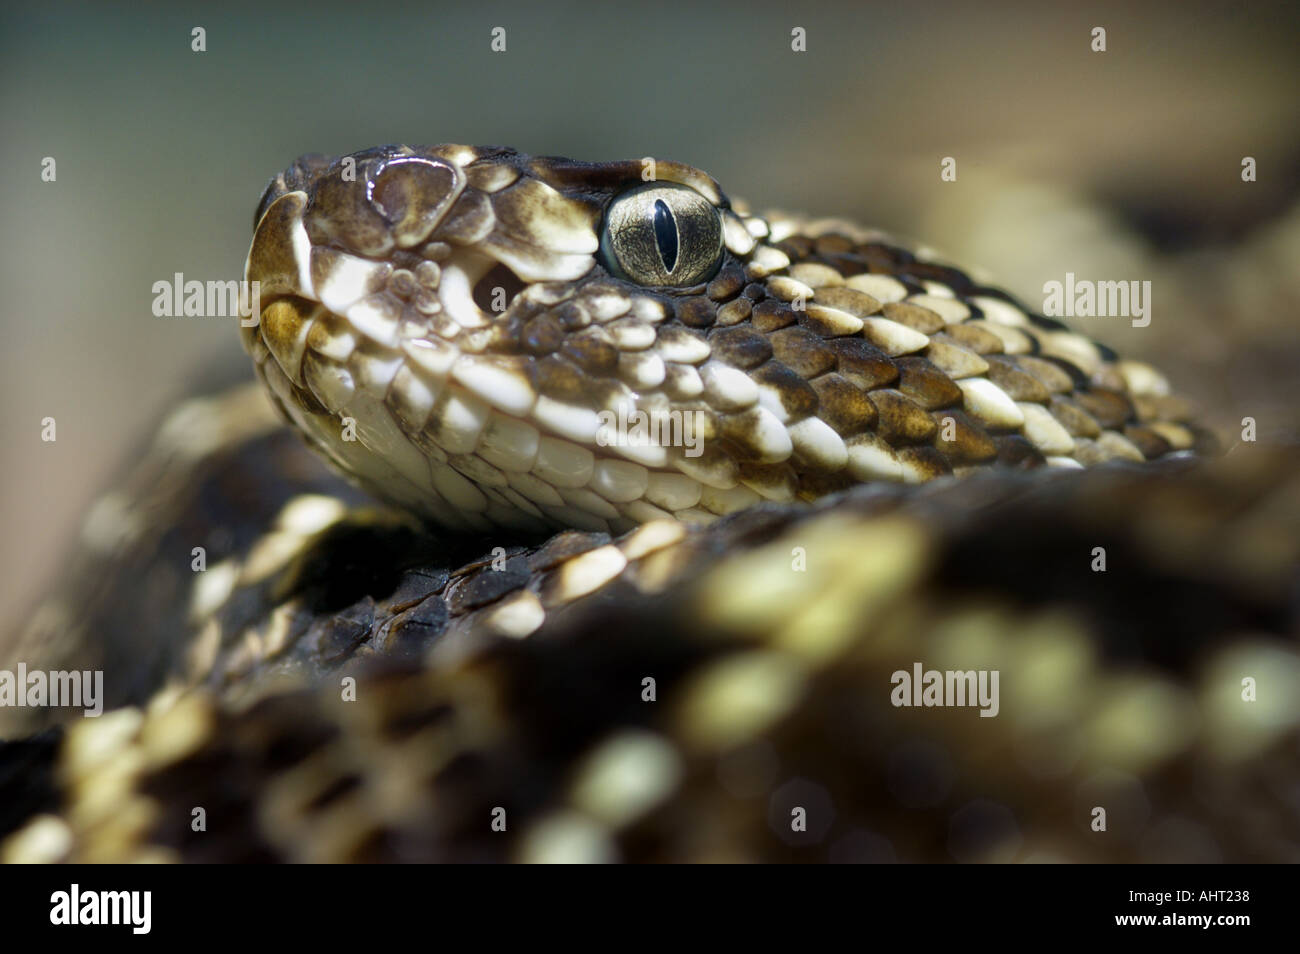 rattle snake RATTLESNAKE Klapperschlange CROTALUS DURISSUS Stock Photo